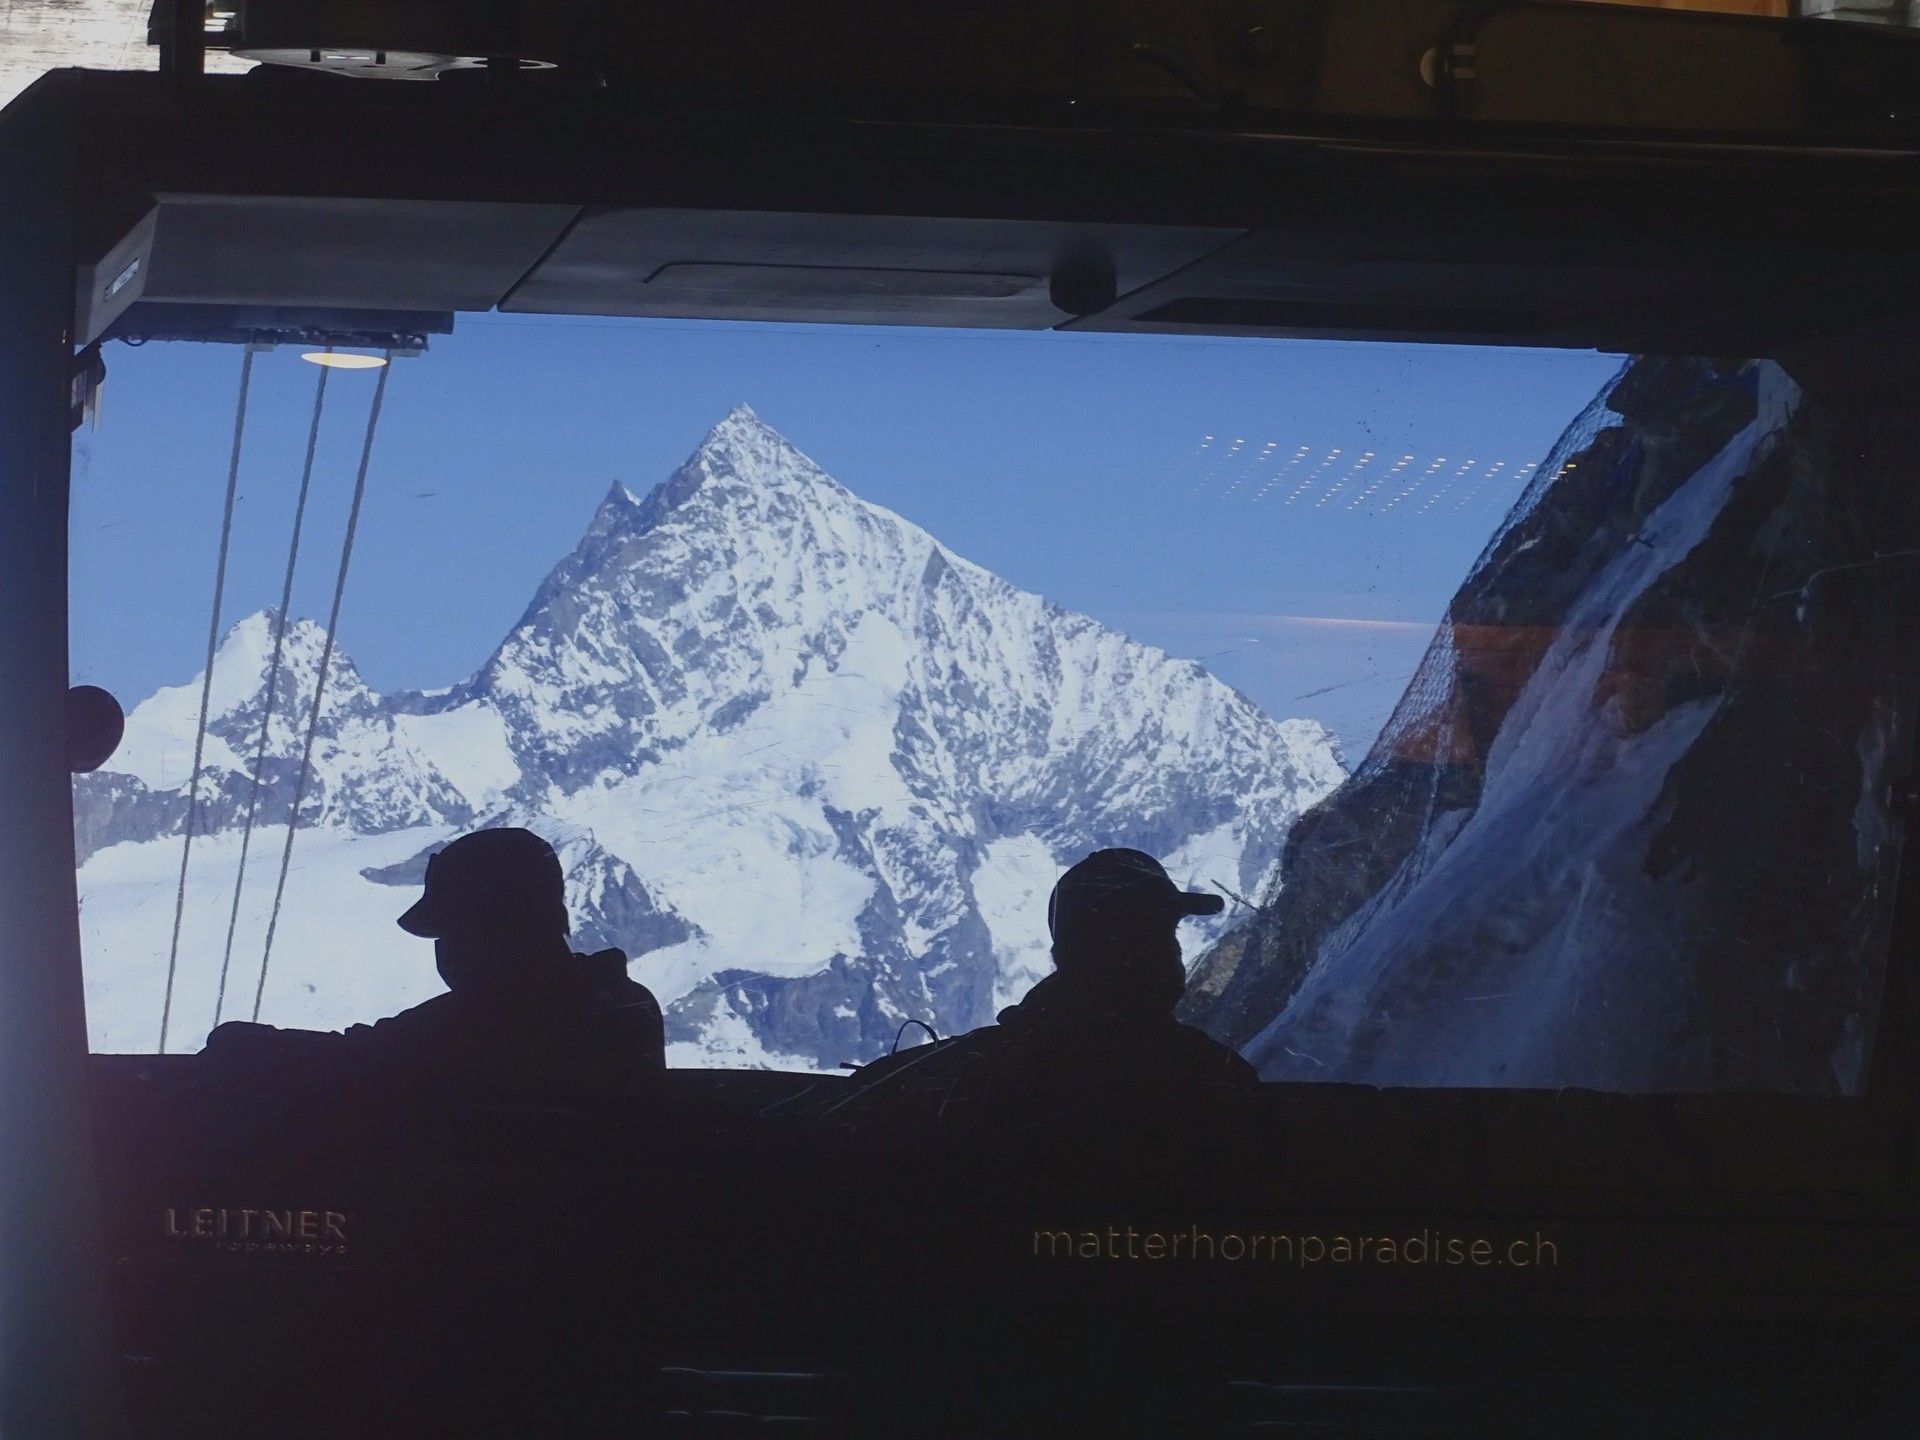 Cervinia-Zermatt, Junio 2021 ......No quería ir a esquiar, pero me han liado!  